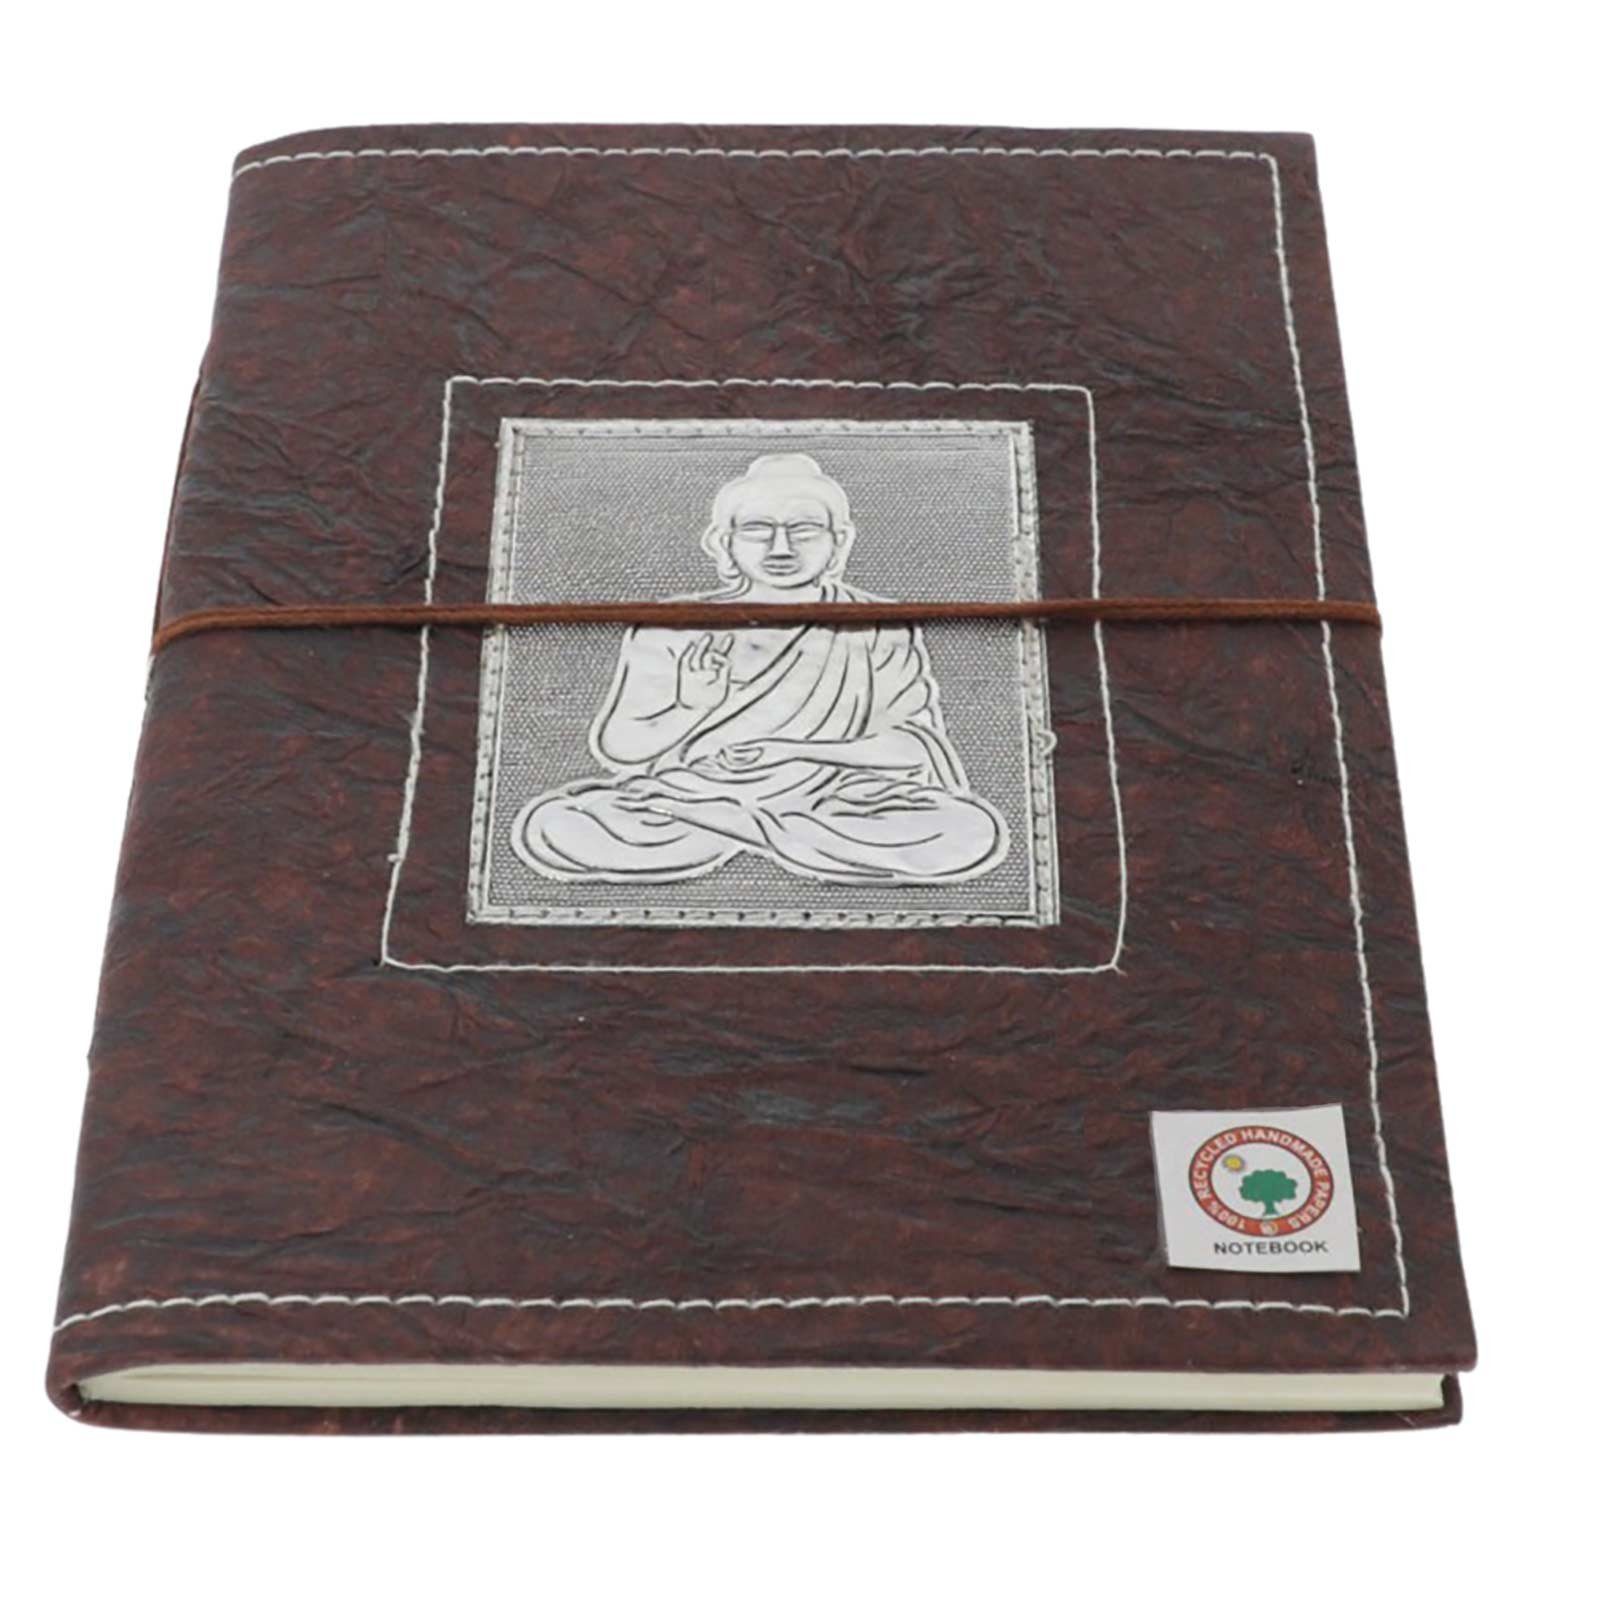 KUNST UND MAGIE Notizbuch Buddha Tagebuch Poesiealbum handgefertigt-Geprägtes Notizbuch 20x15cm